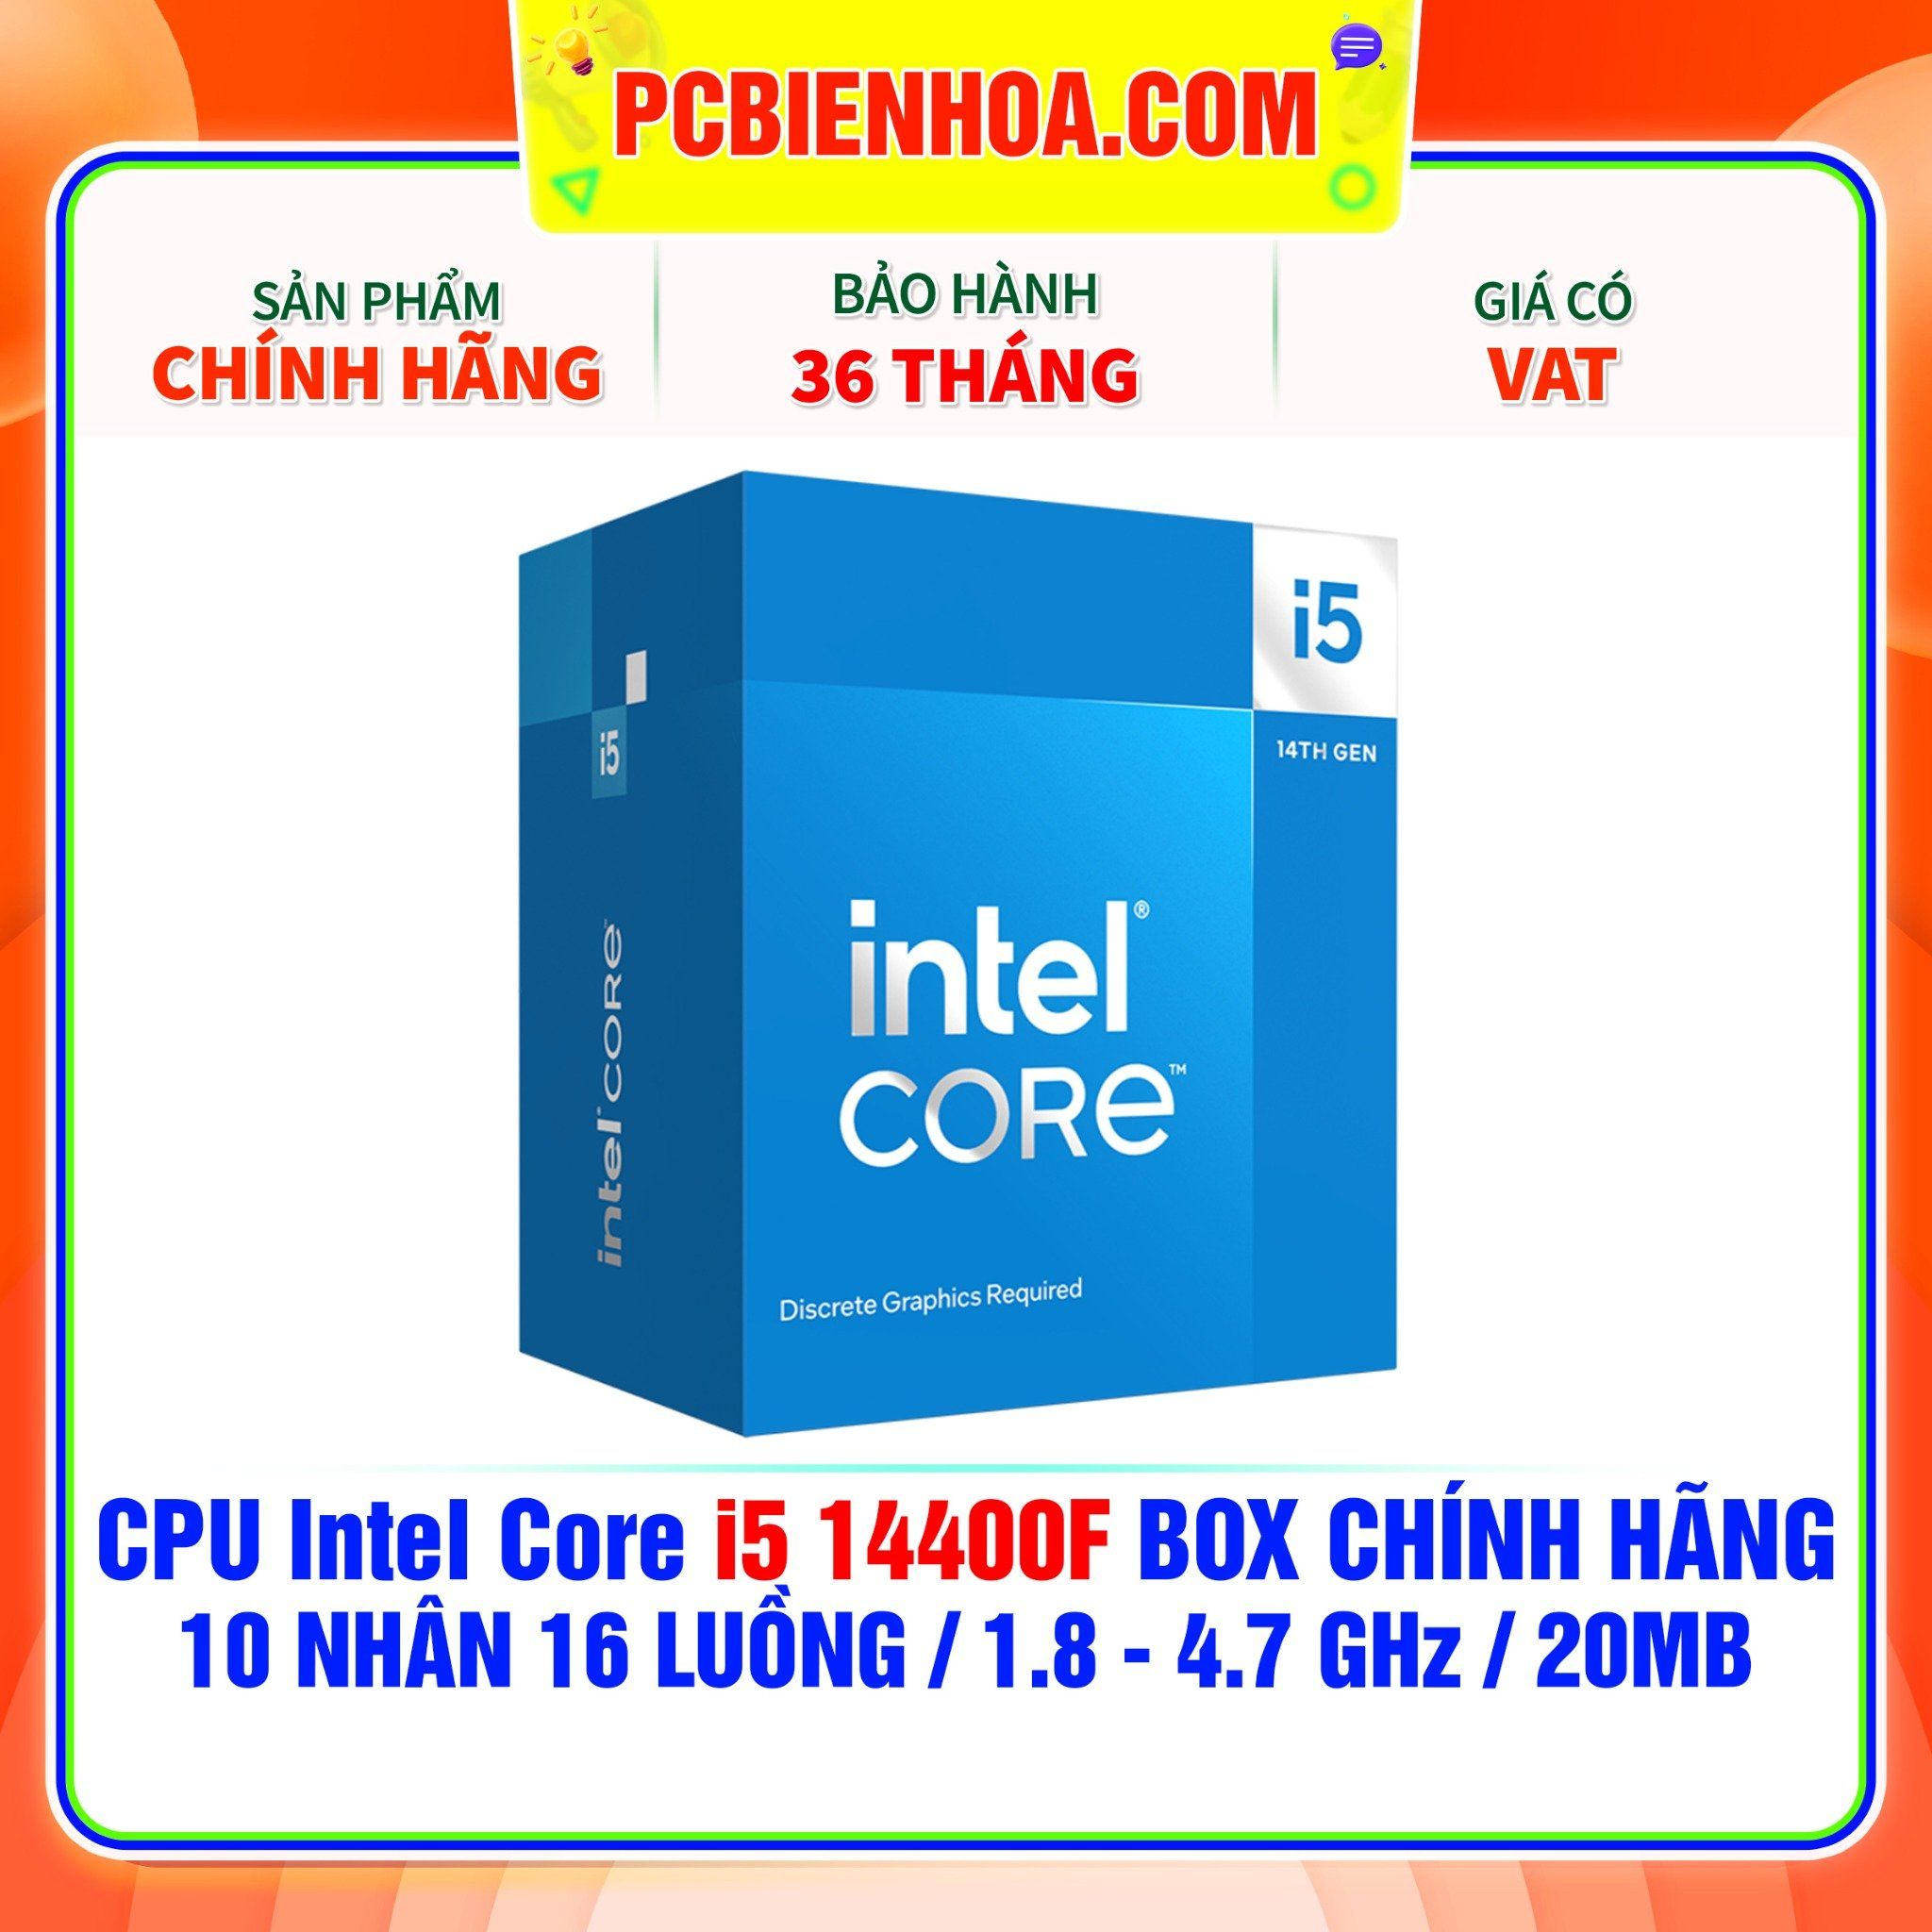  CPU Intel Core i5 14400F BOX CHÍNH HÃNG ( 10 NHÂN 16 LUỒNG / 1.8 - 4.7 GHz / 20MB ) 